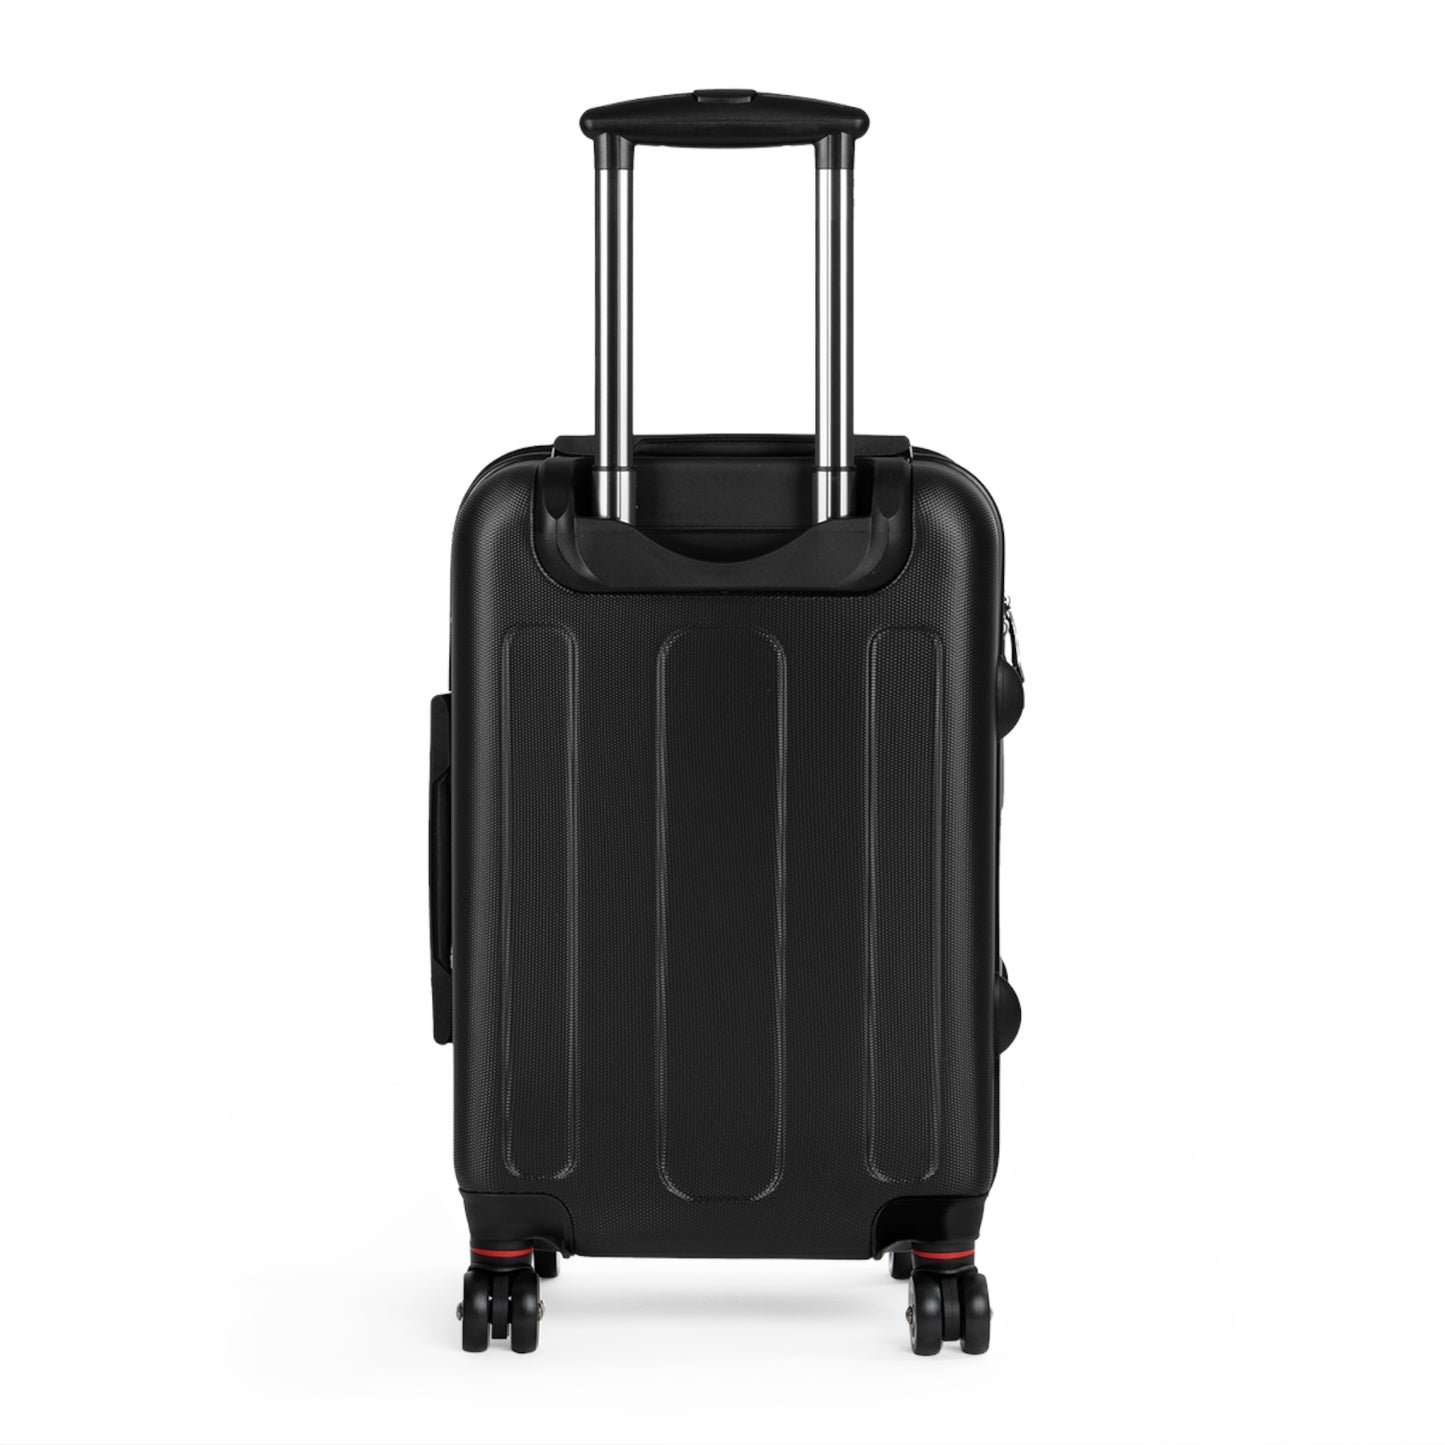 Birming-HAM Suitcase